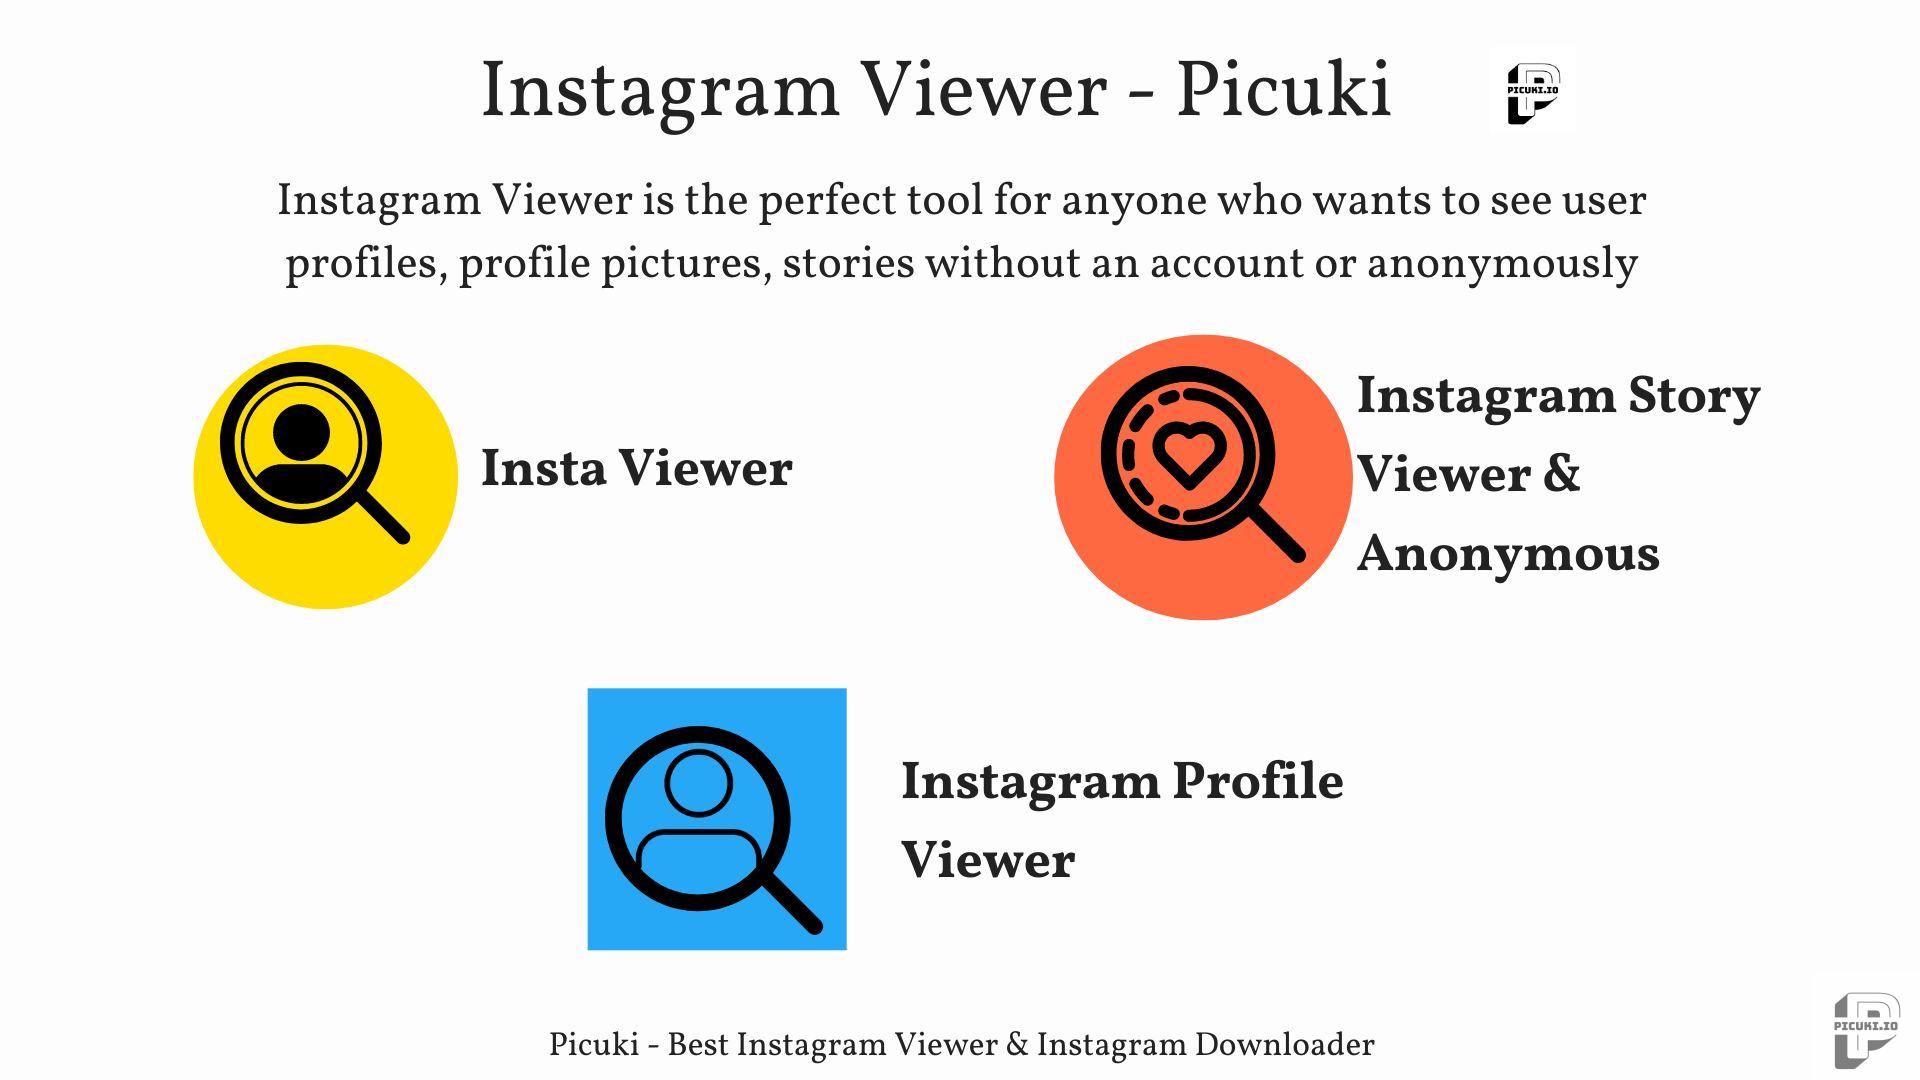 Picuki - Instagram Viewer